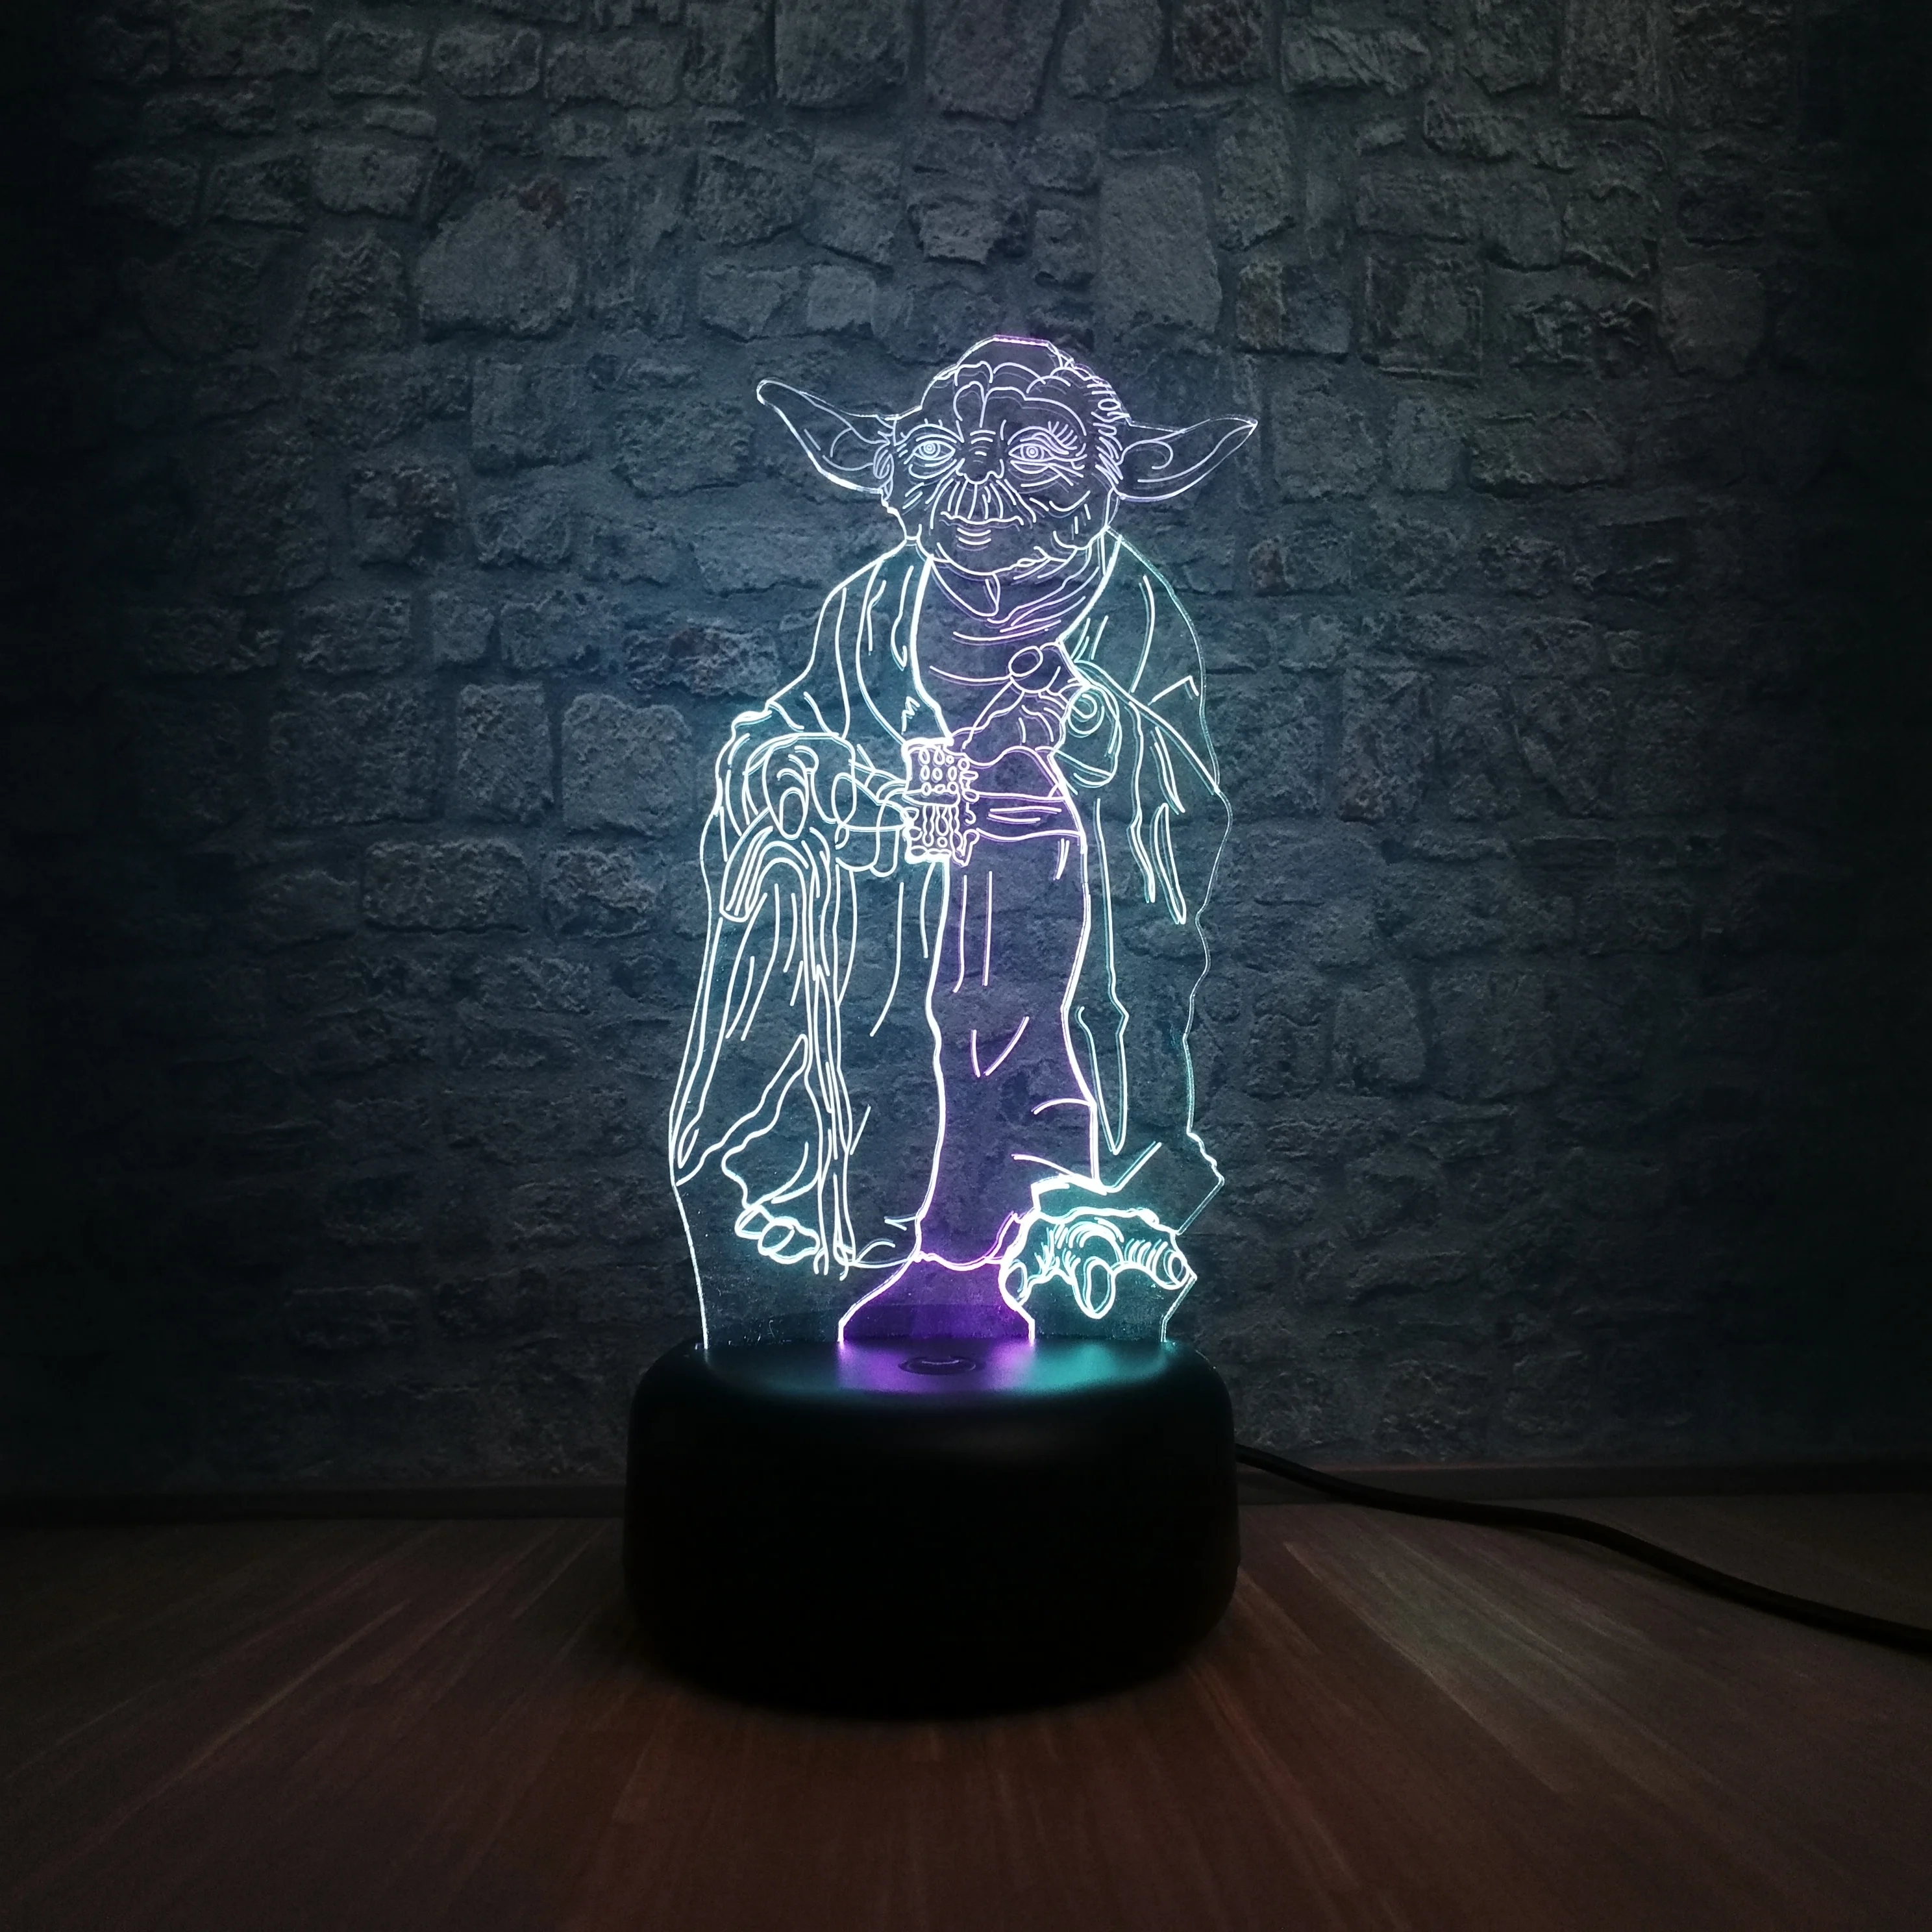 Мастер Йода креативный мультфильм Звездные войны фигурка смешанных цветов 3D лампа светодиодный USB ночник 7 цветов градиент подарок детские игрушки стол